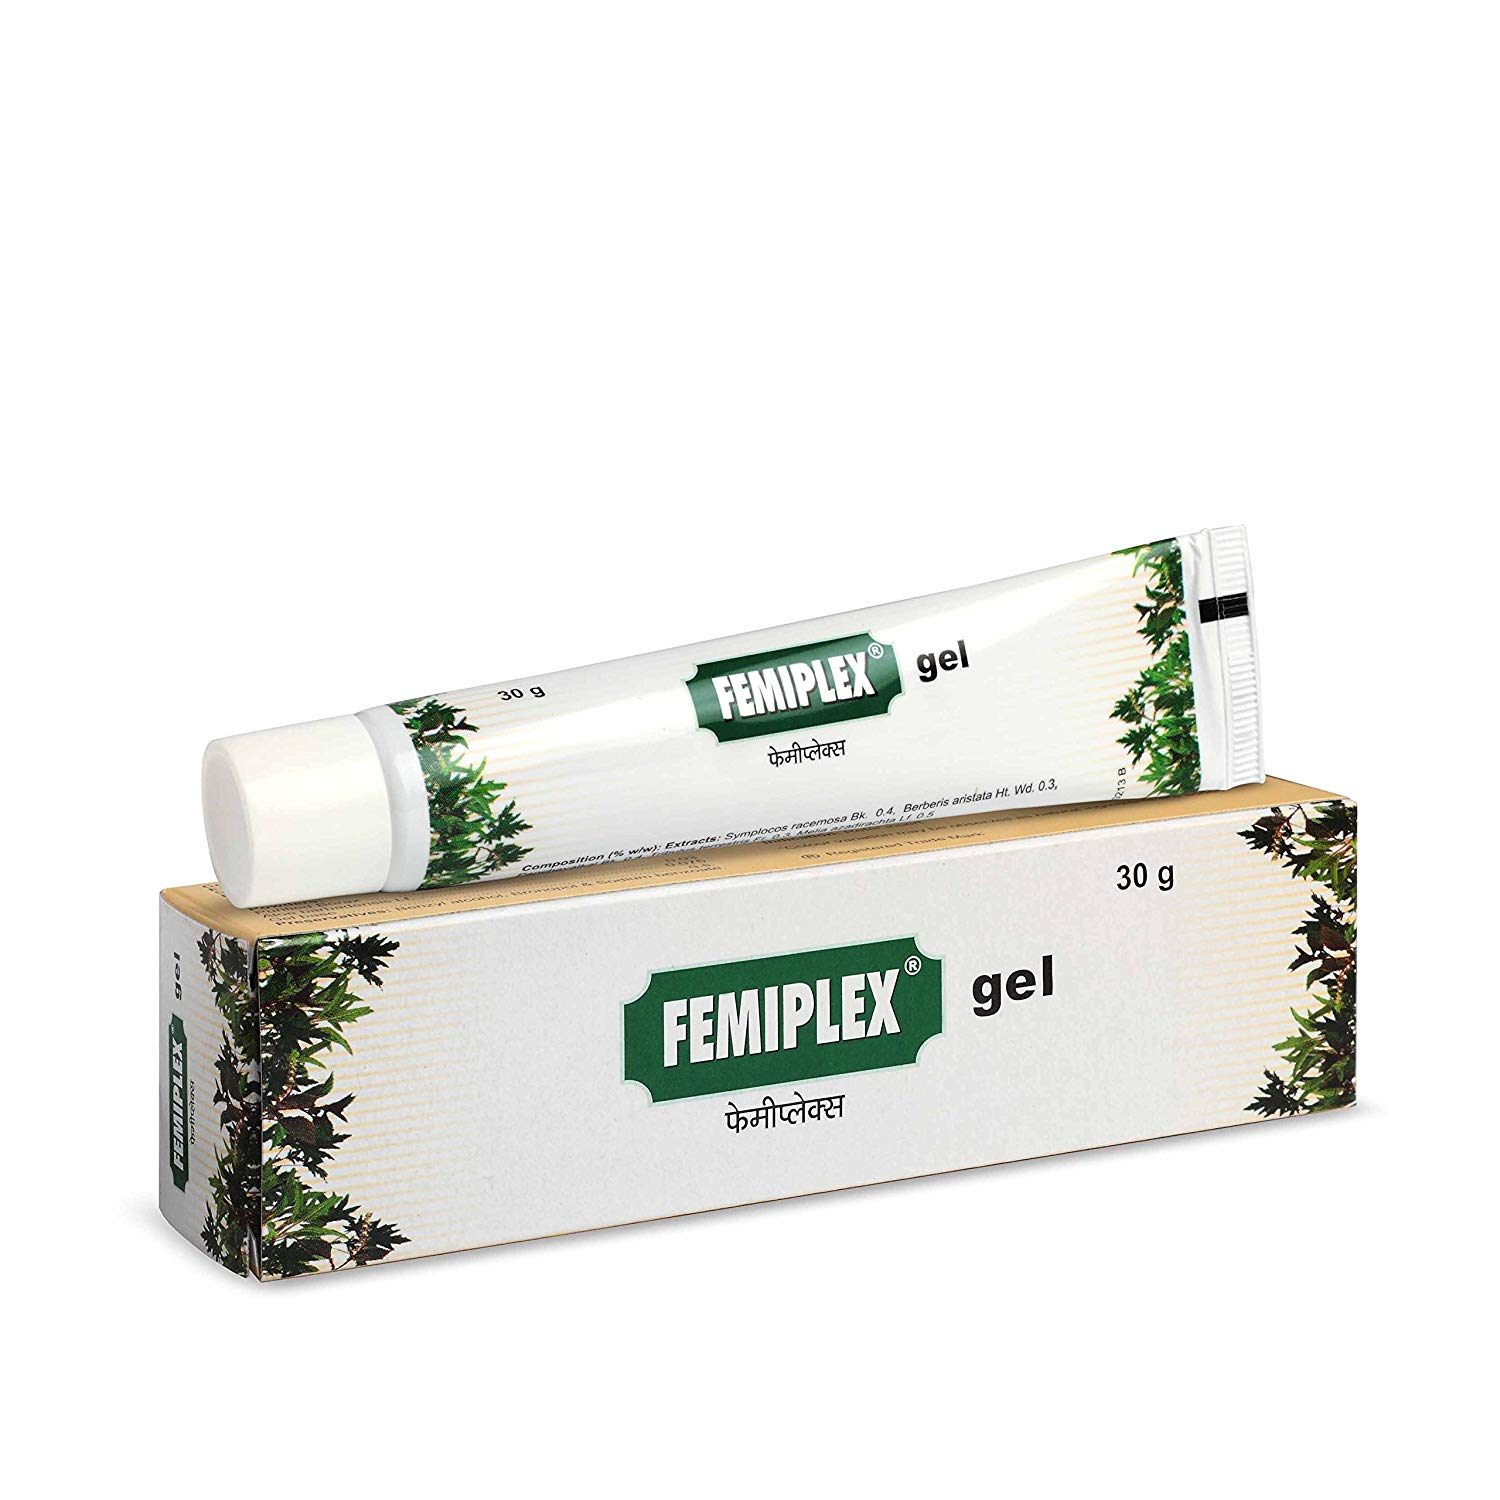 Вагинальный гель Фемиплекс, 30 г, производитель Чарак; Femiplex Gel, 30 g, Charak